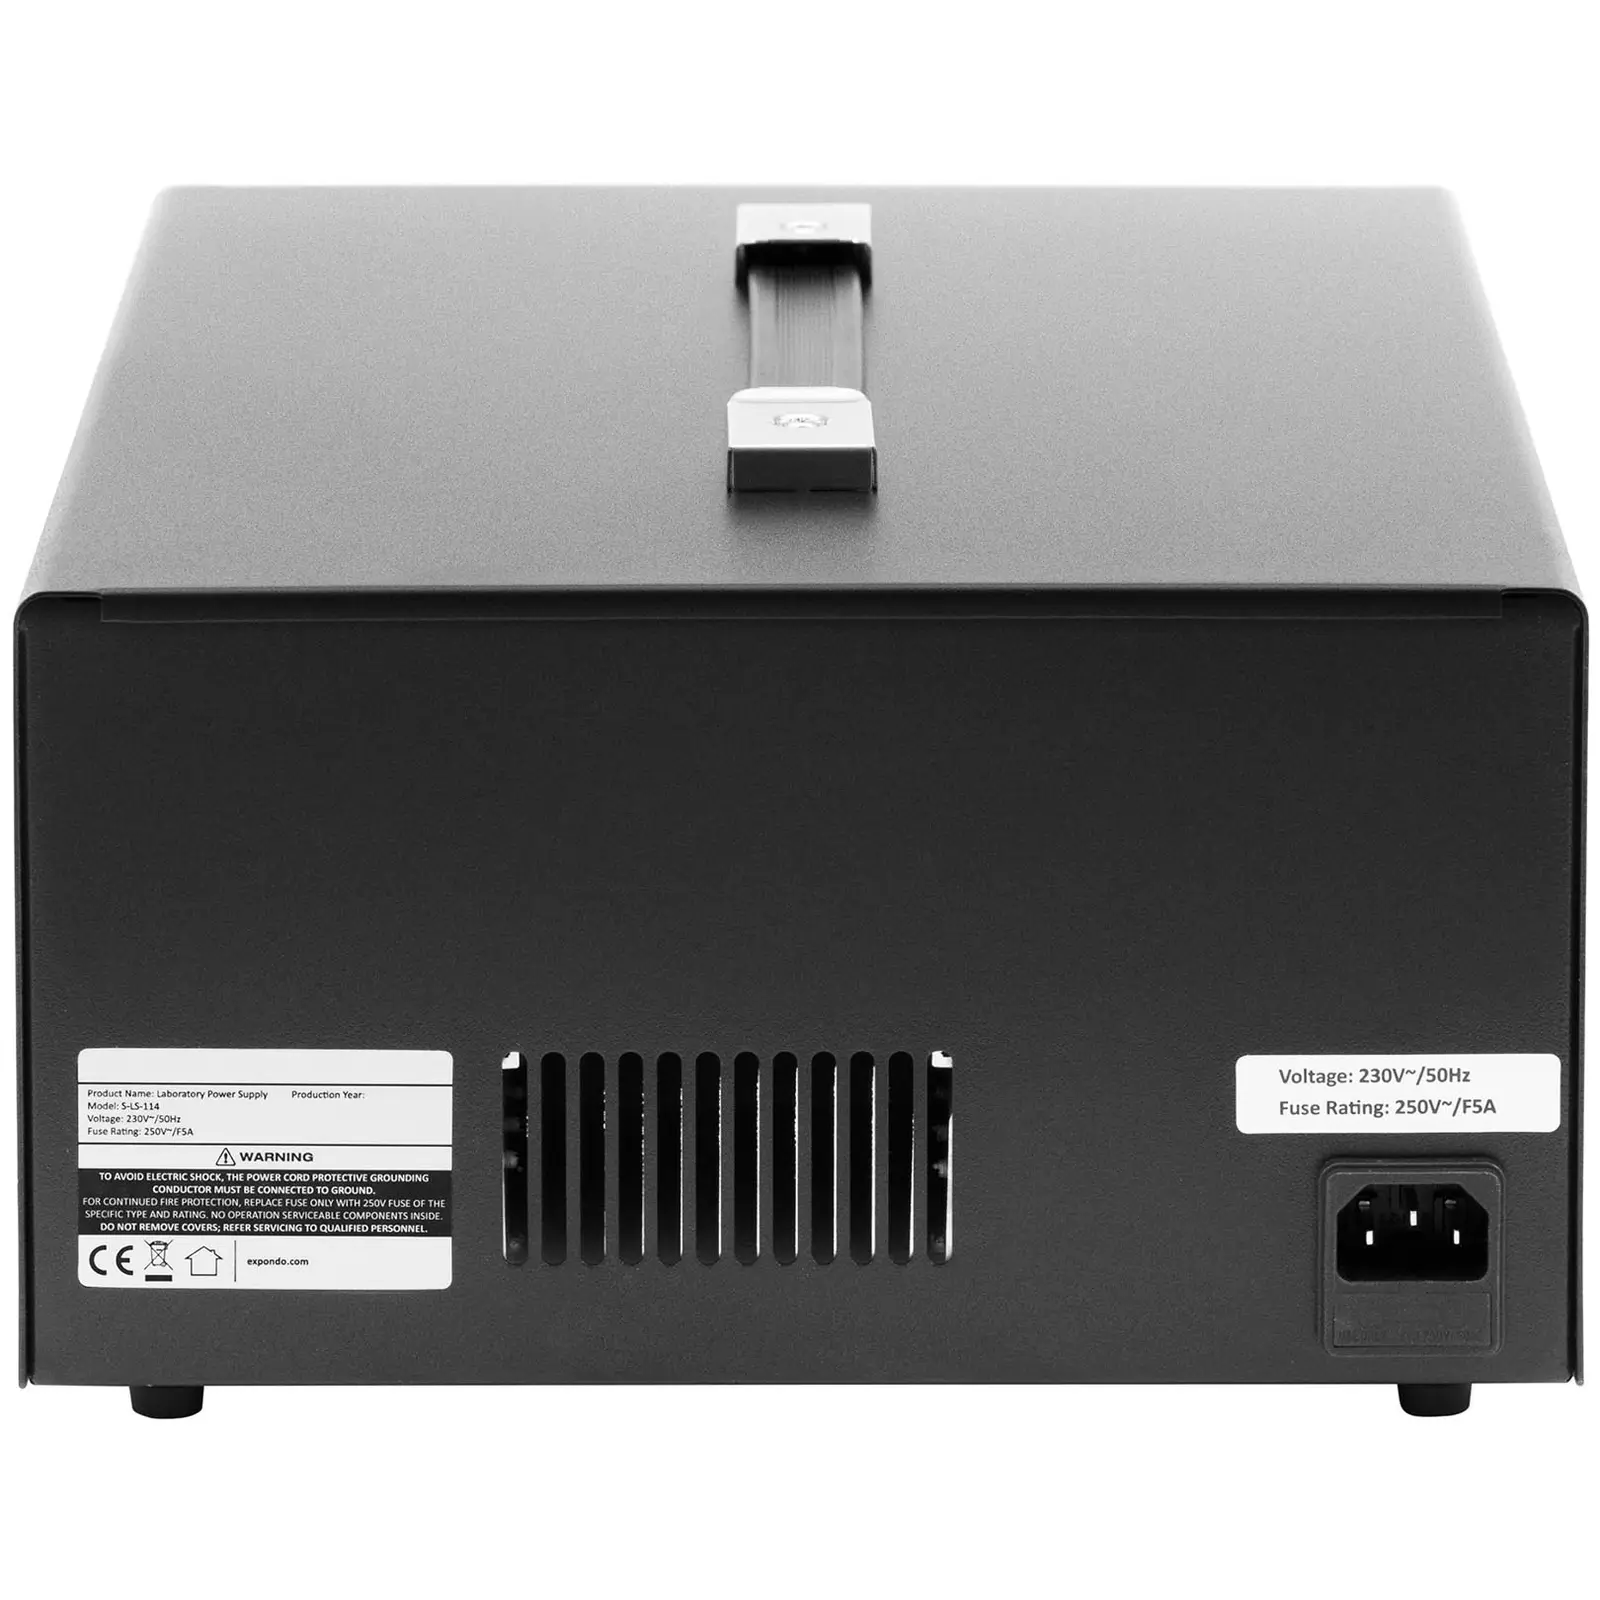 Laboratoriovirtalähde - 0 - 30 V - 0 - 5 A DC - 2 x 150 W + 15 W - 5 muistipaikkaa - LED-näyttö - USB/RS232